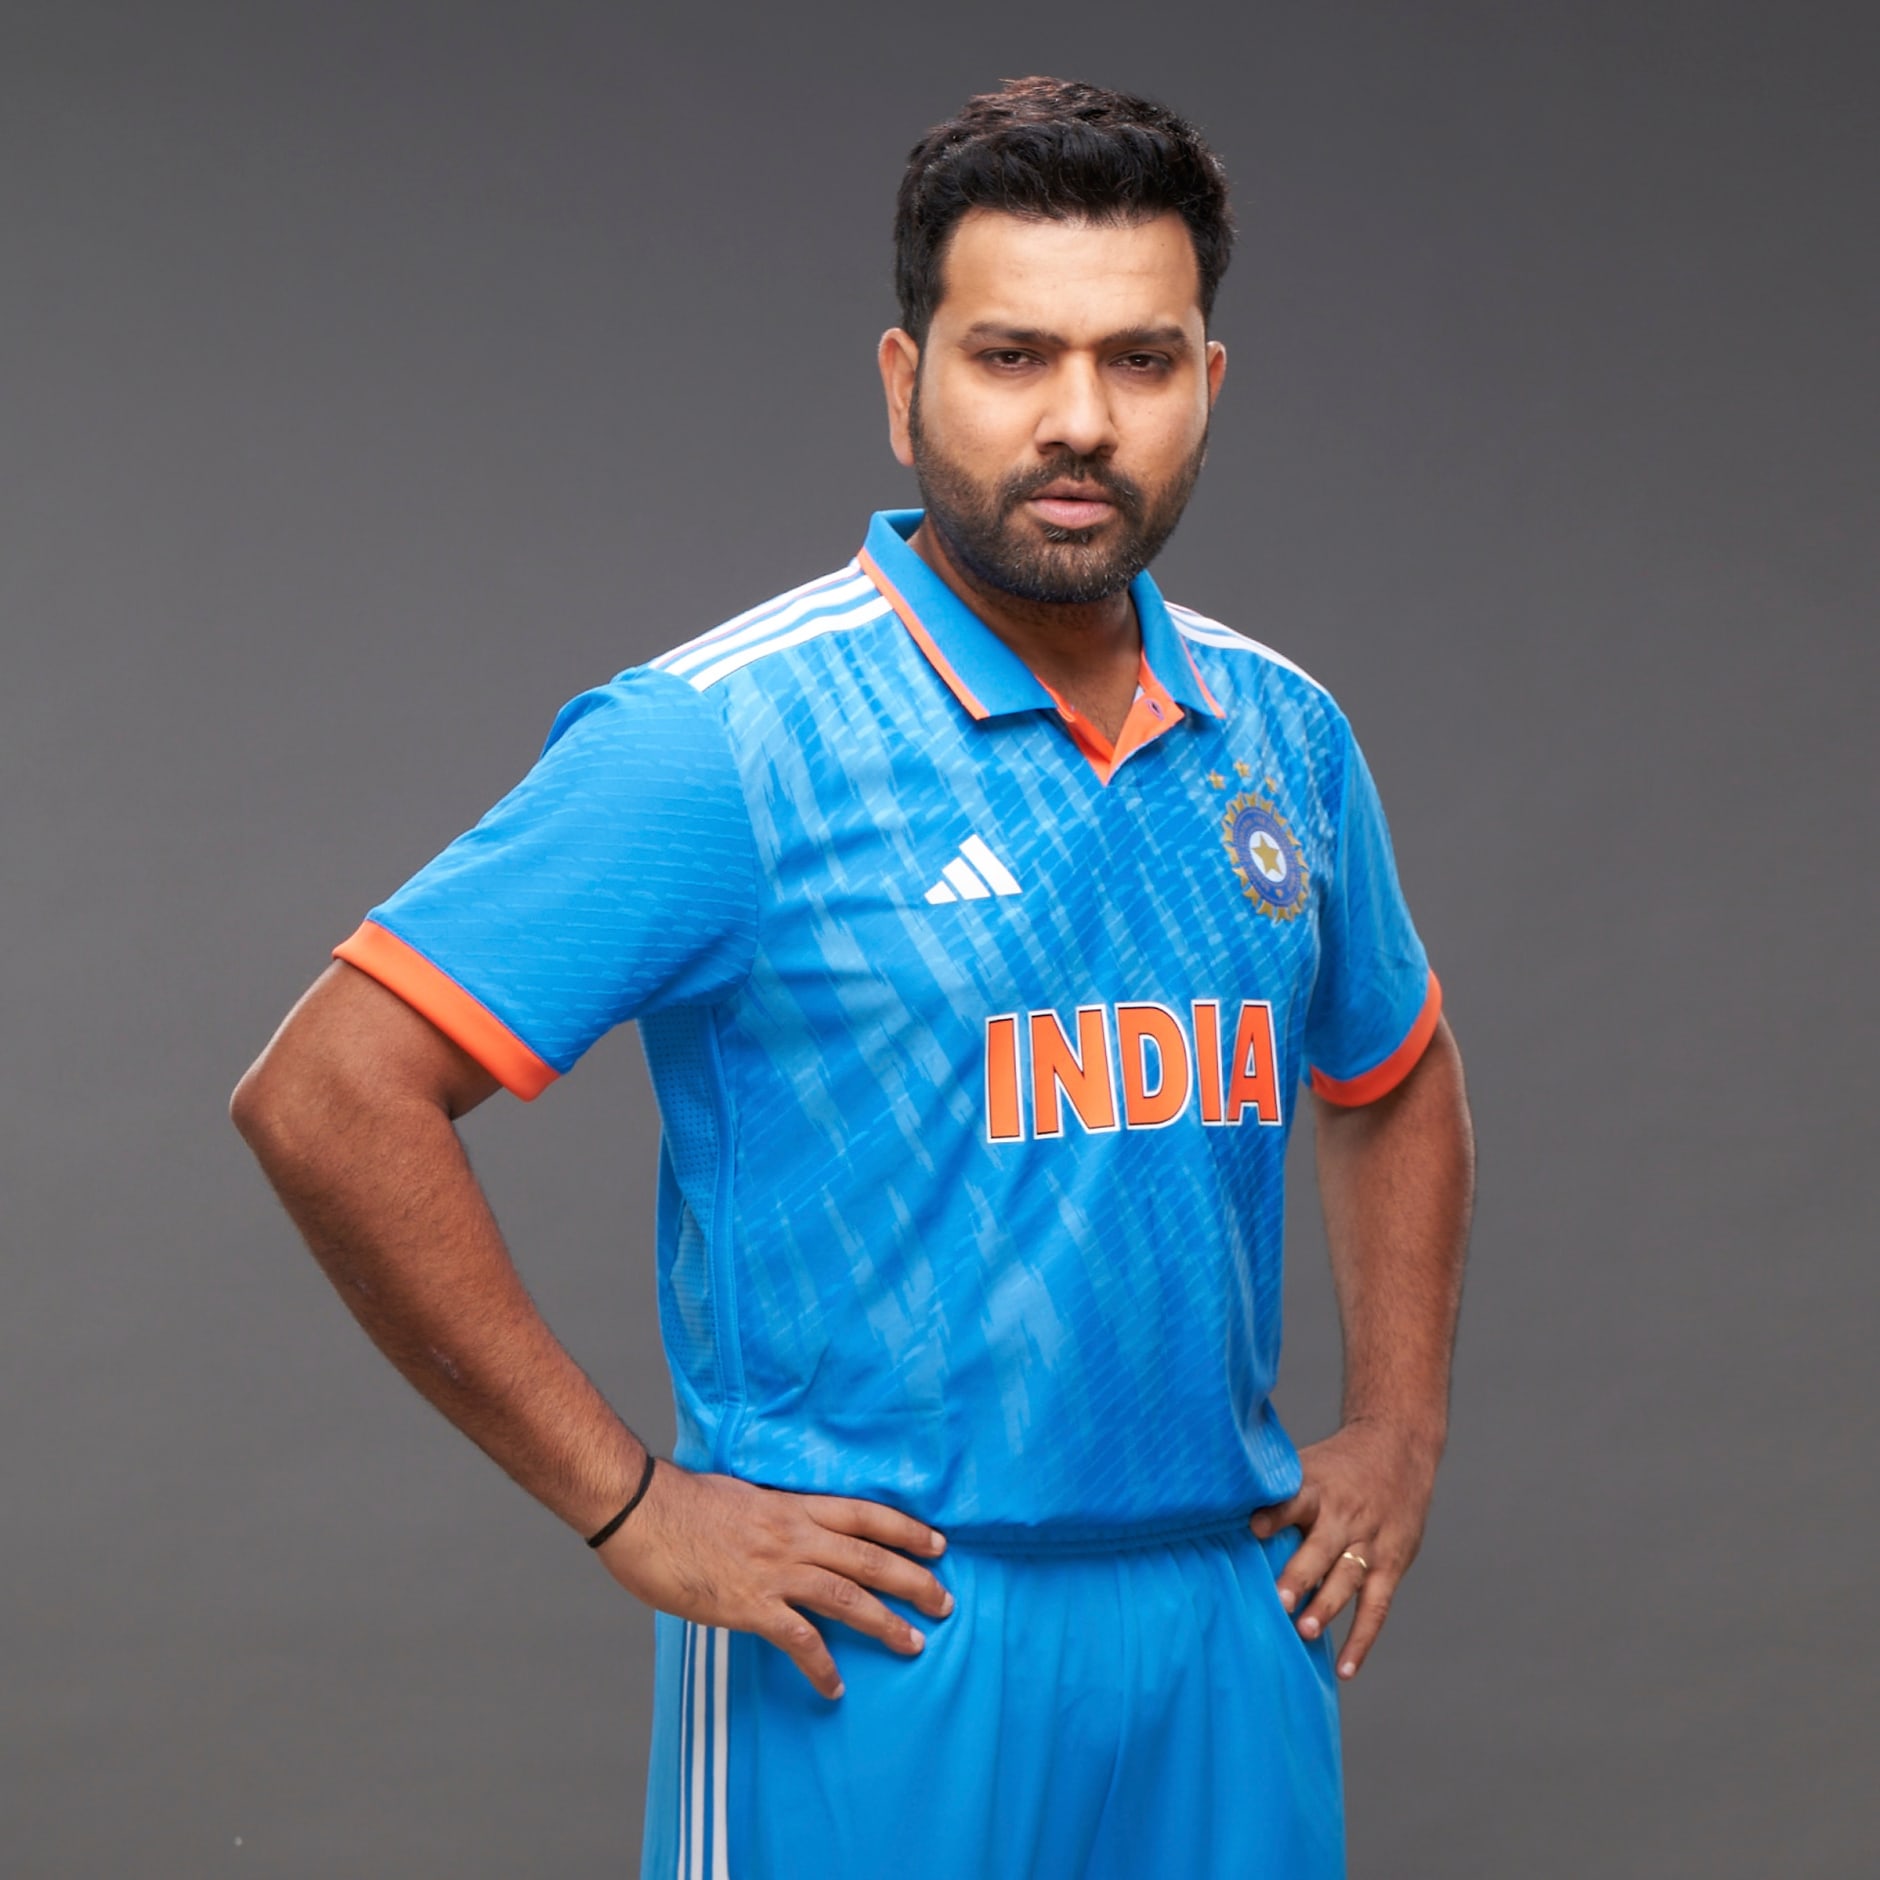 Adidas India Cricket Odi Jersey Men Blue Adidas Uae 5644